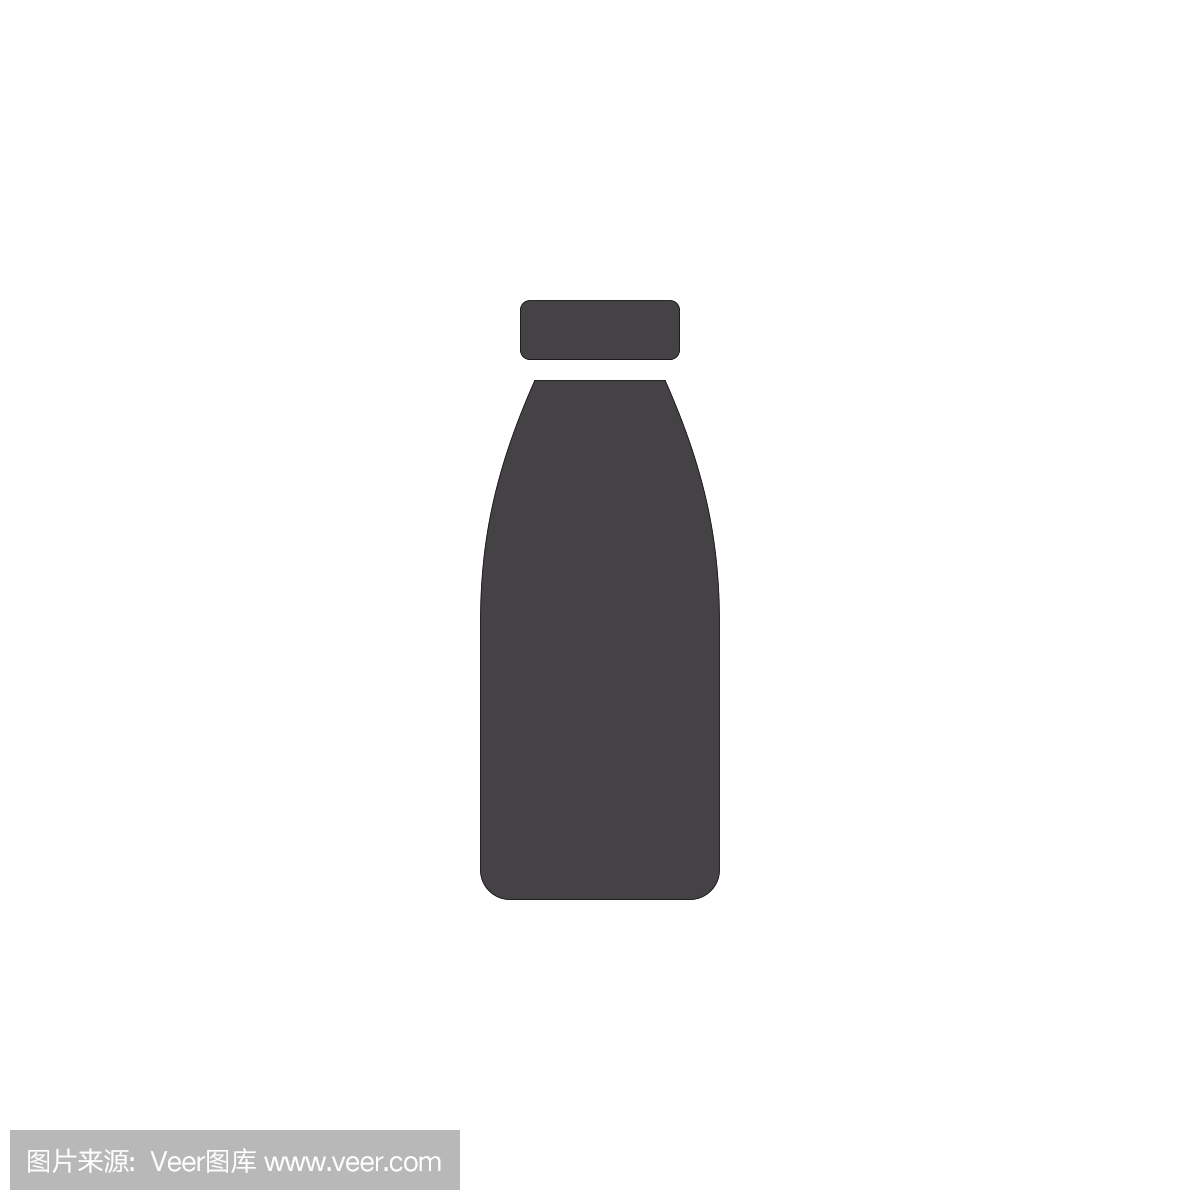 牛奶瓶图标矢量,填充的平面标志,在白色孤立的